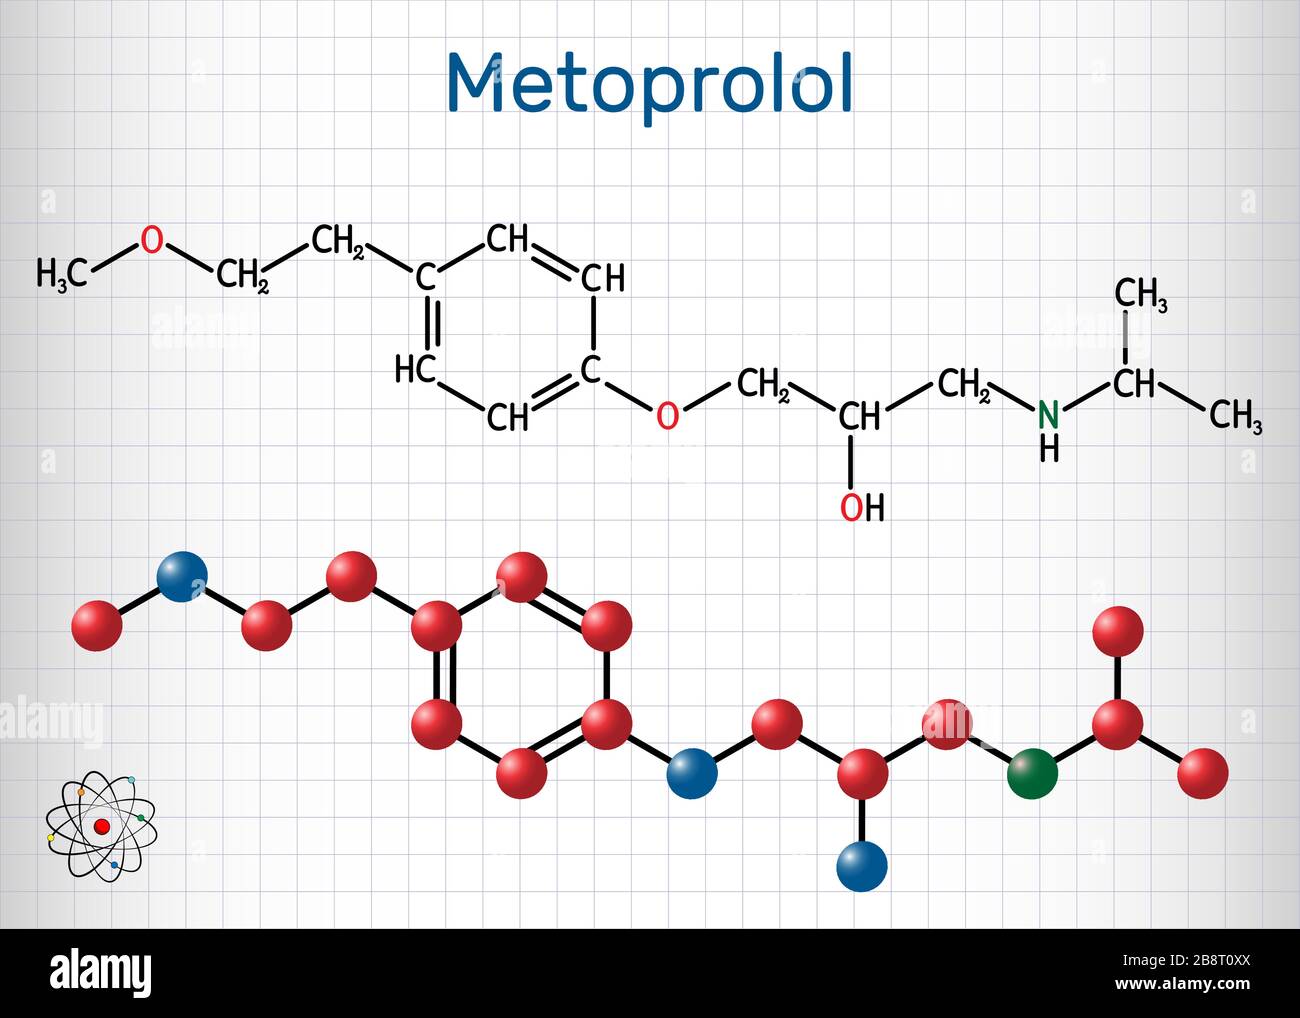 Metoprolol, C15H25NO3-Molekül. Es wird zur Behandlung von Hypertonie und Angina pectoris verwendet. Blatt Papier in einem Käfig. Vektorgrafiken Stock Vektor